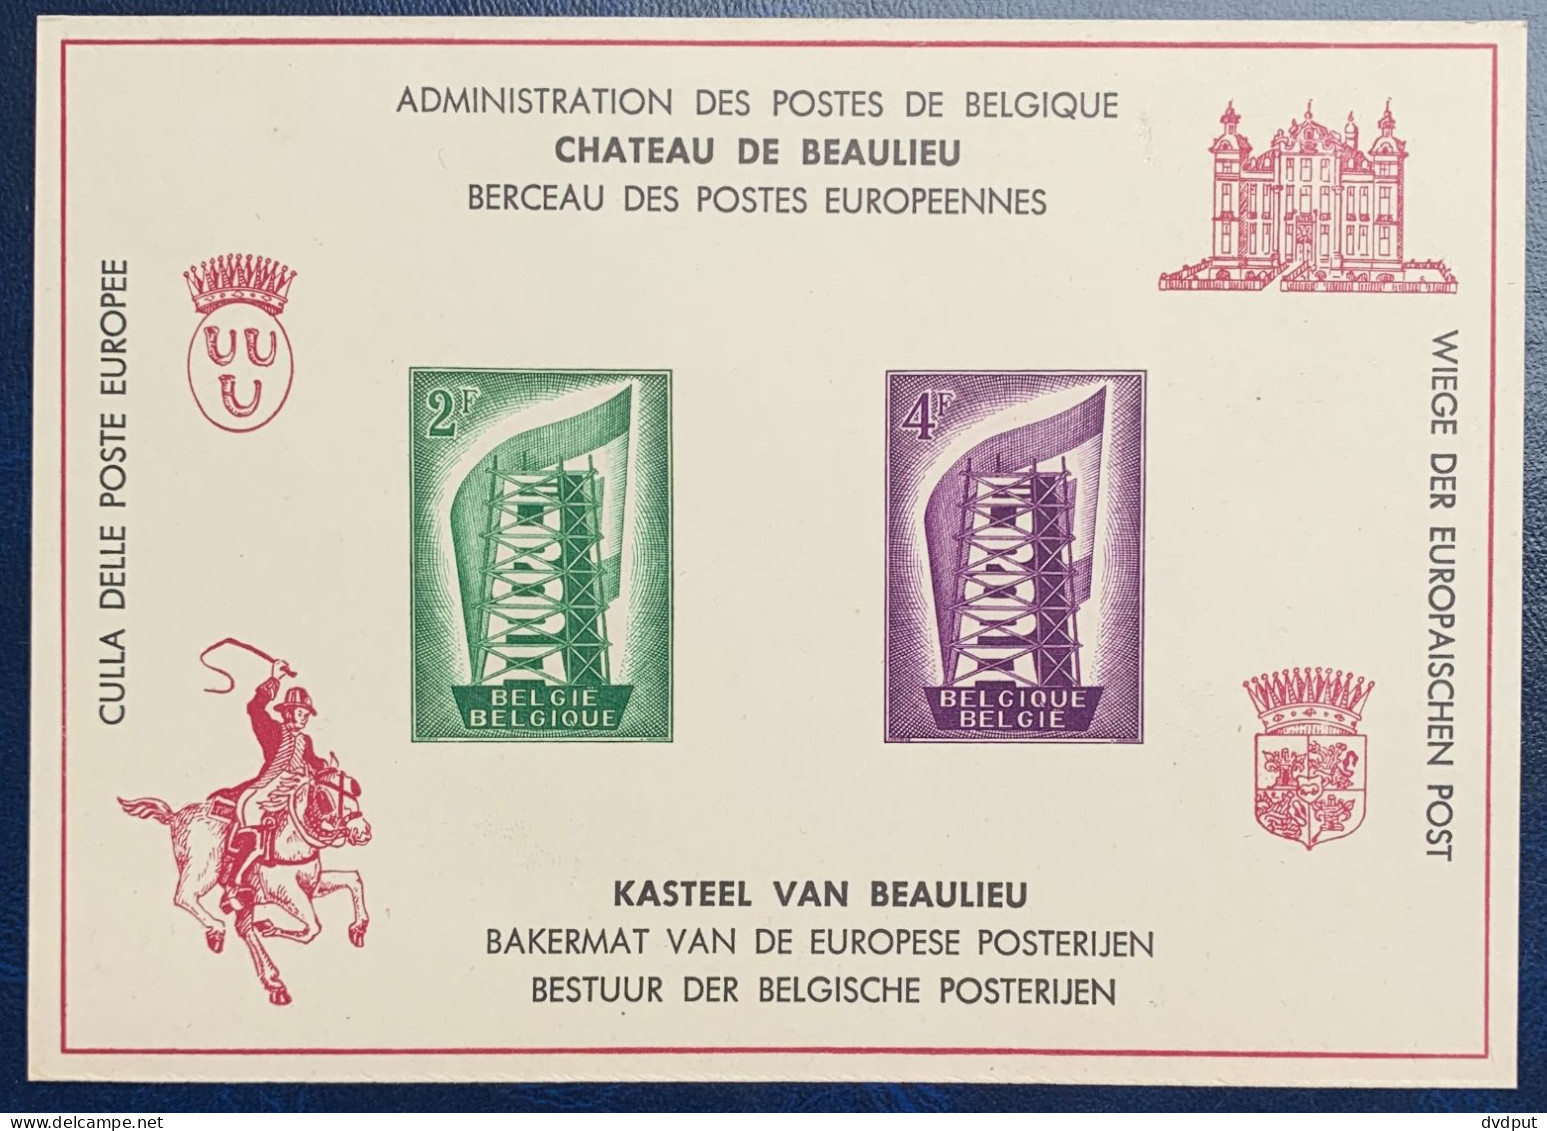 België, 1956, LX21, Postfris **, OBP 37€ - Luxuskleinbögen [LX]